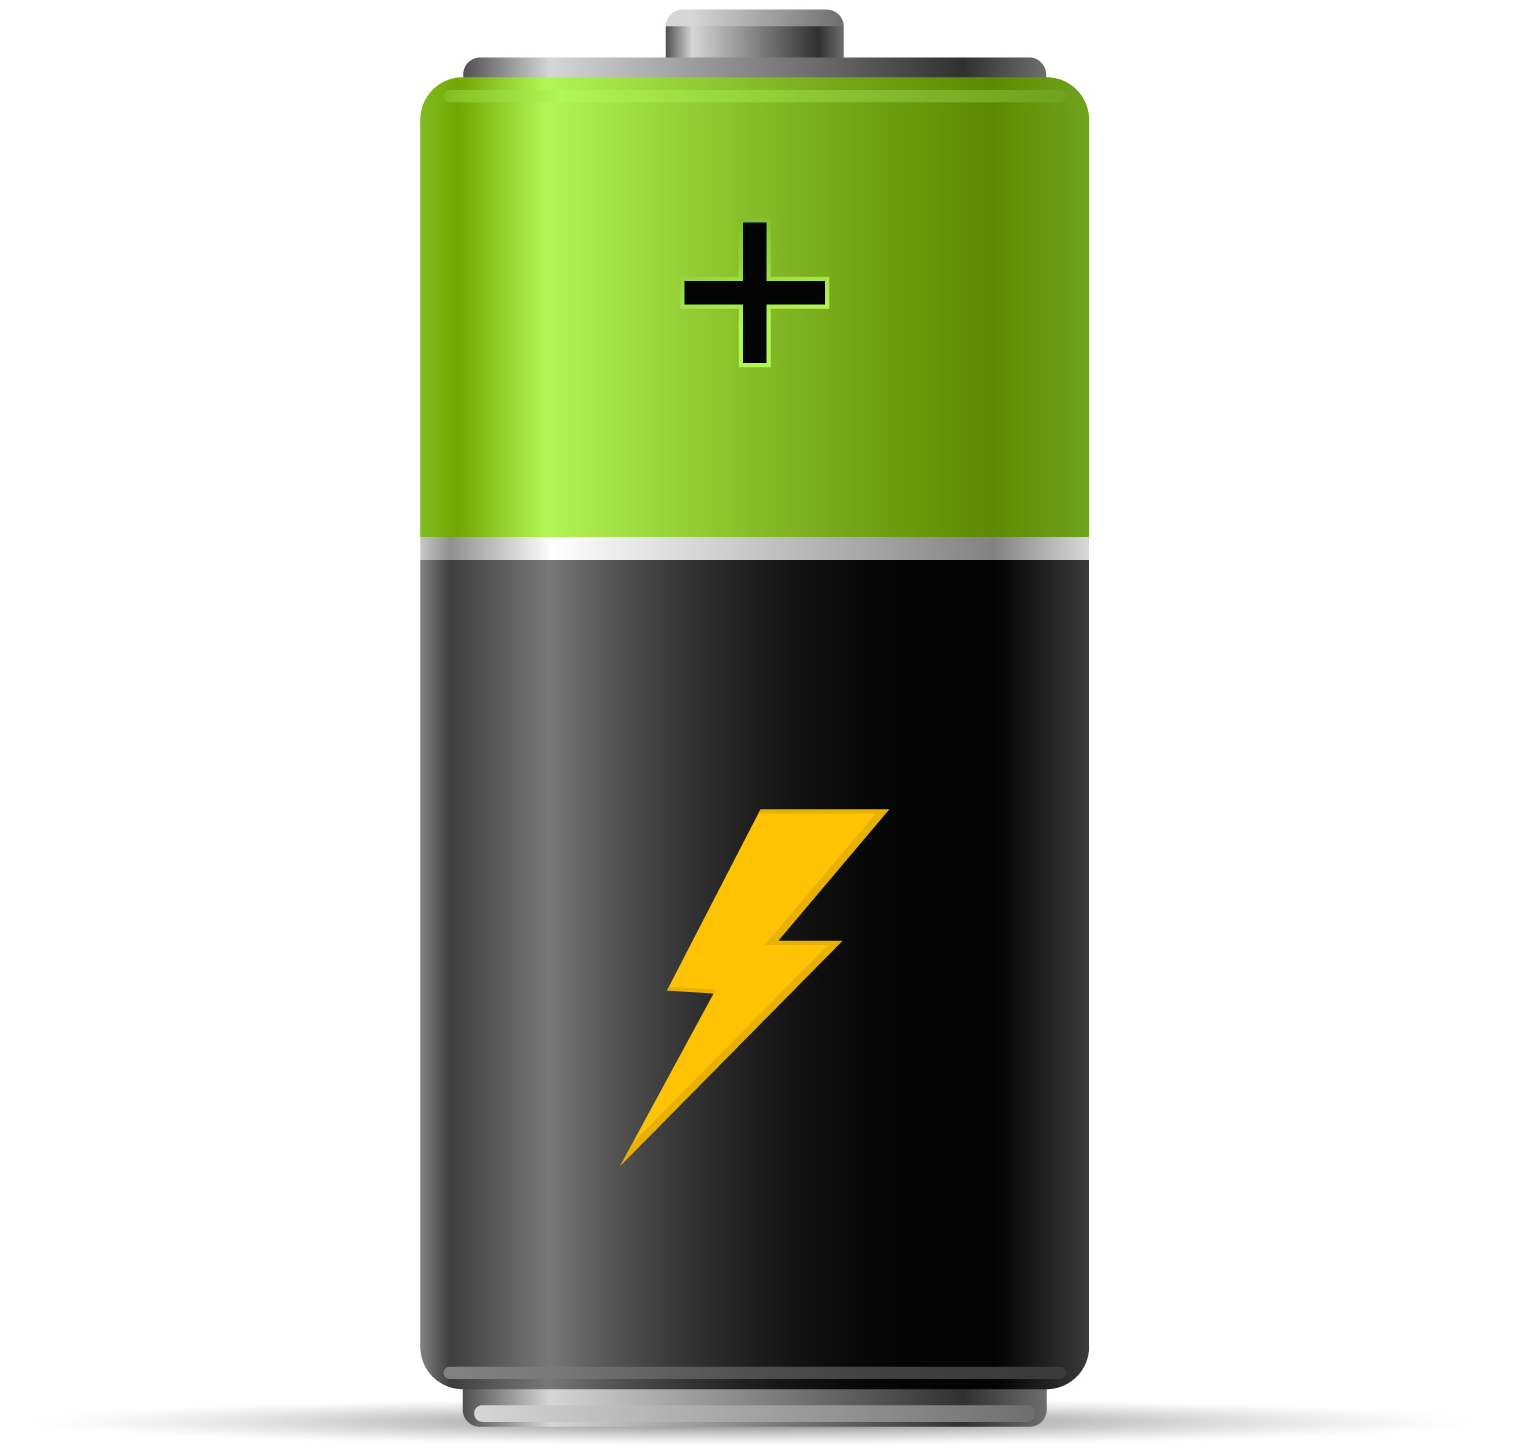 Iphone Battery icon. Значок аккумулятора. Значок батарейки. Батарейка без фона.